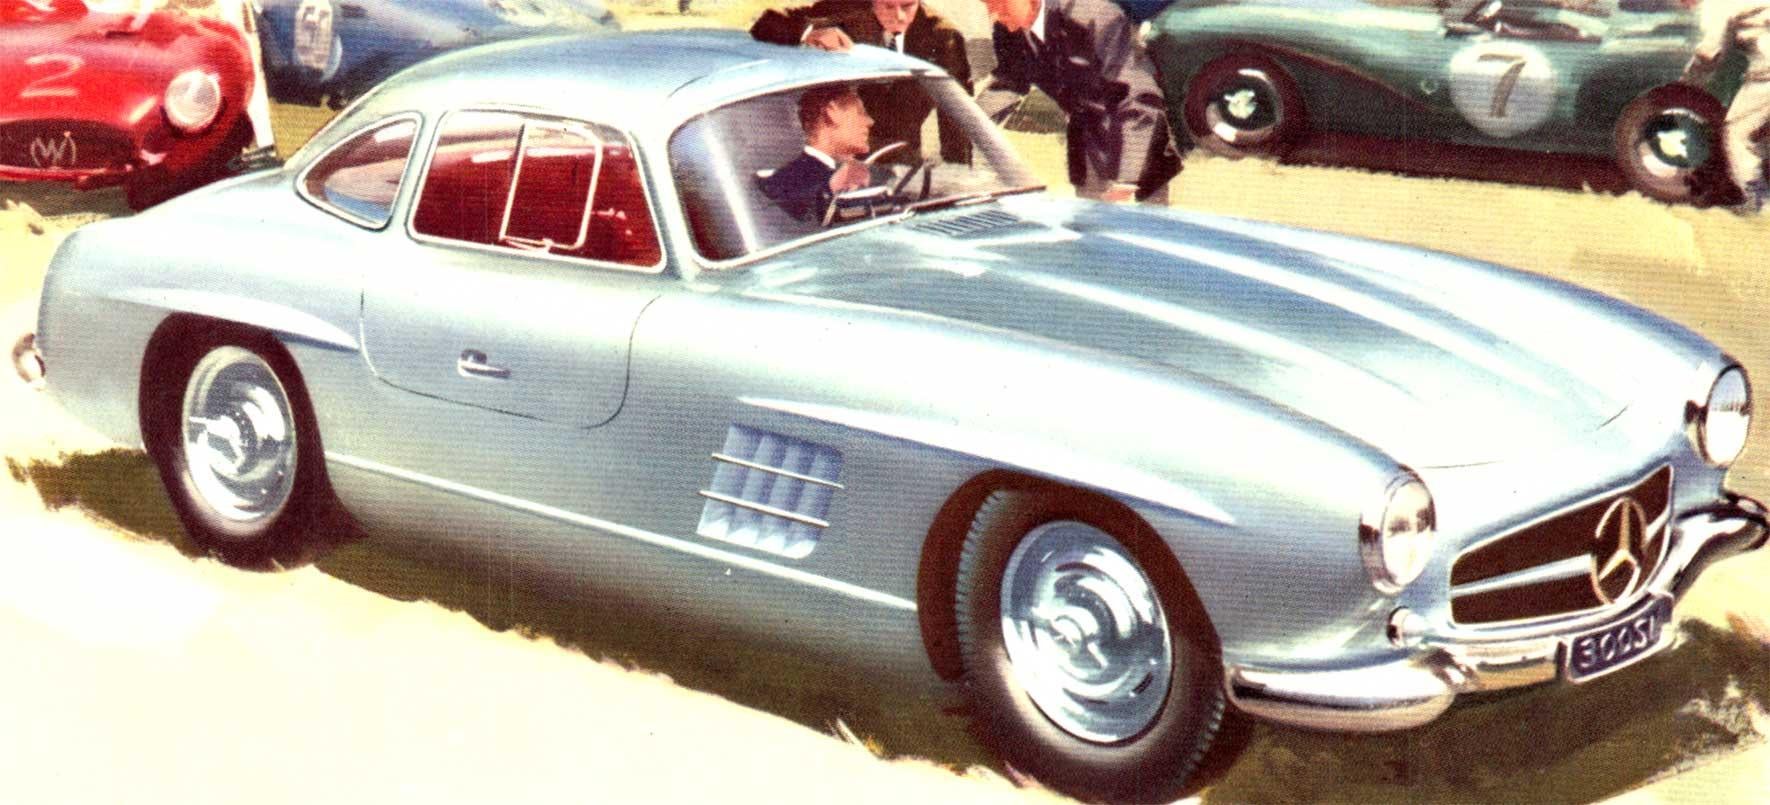 Original Mercedes-Benz Type 300-SL.   Dos toilé, format horizontal, bon état.

Il s'agit d'une reproduction originale de petit format de la voiture de sport Mercedes 300 SL, datant de 1958. Il a été monté sur lin pour les archives.   En bon état,